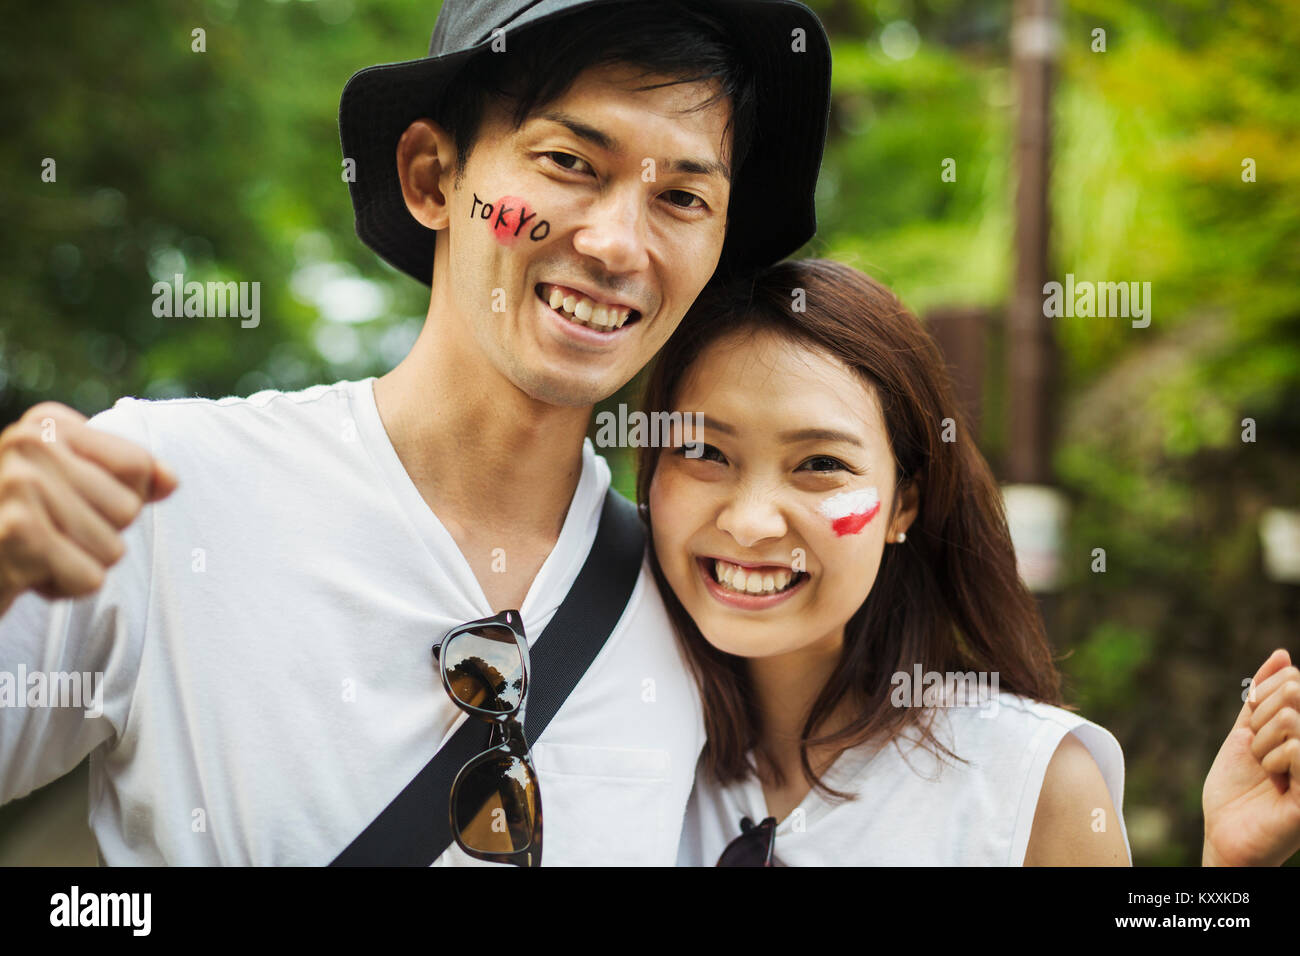 Ritratto di uomo che indossa un cappello e giovane donna con capelli castani, bandiera giapponese dipinta sulla sua guancia, sorridente alla fotocamera. Foto Stock